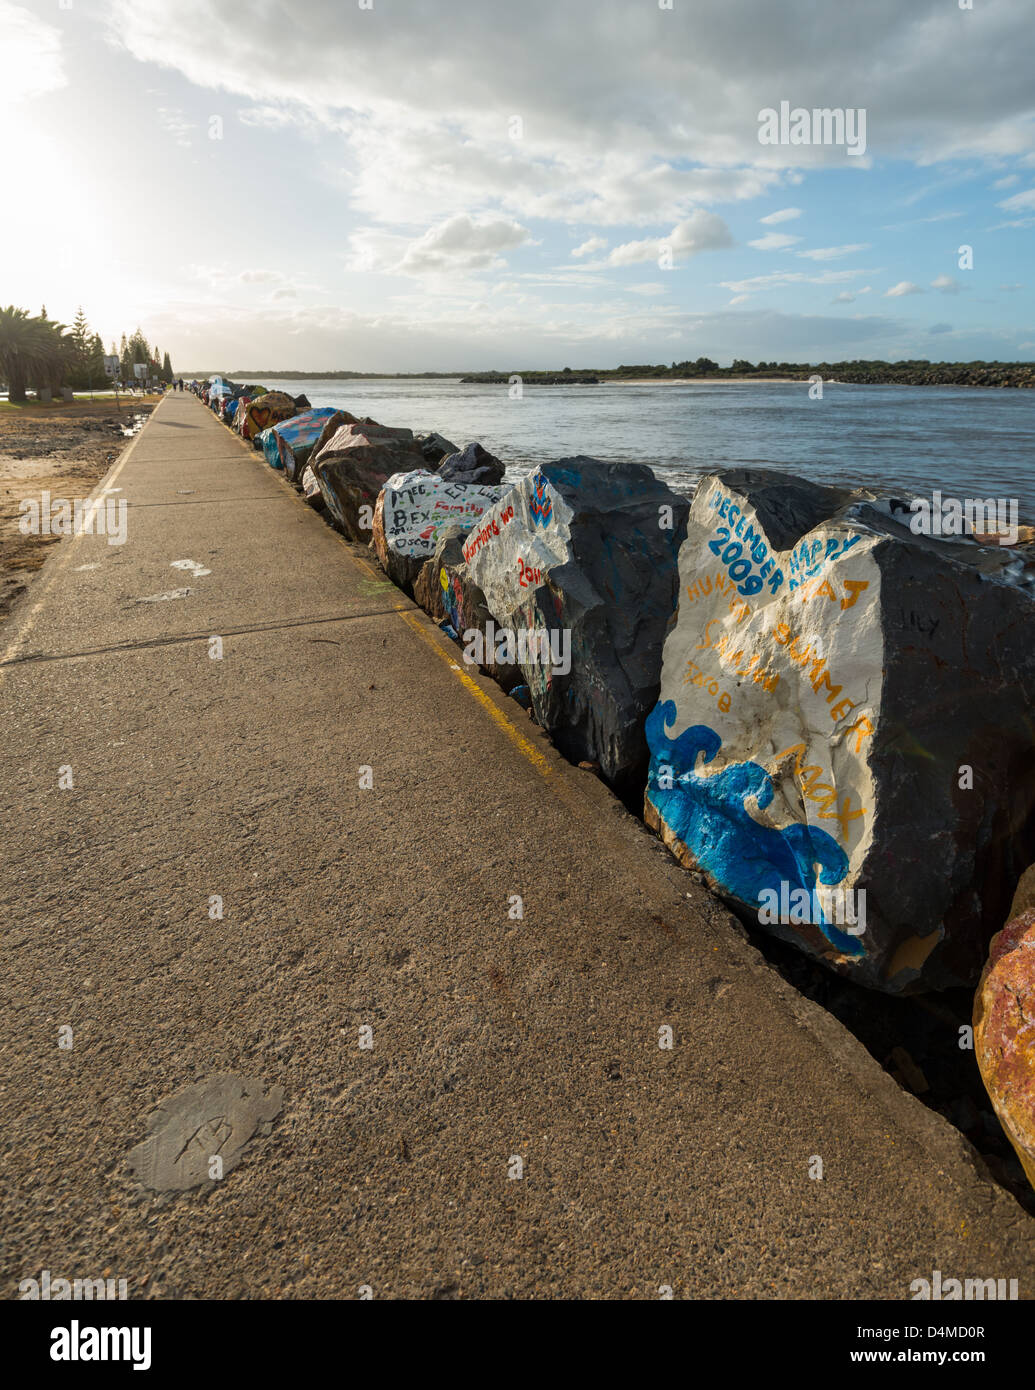 Felsen von lokalen Künstler gemalt, sind ein Merkmal von der Uferpromenade in Port Macquarie New South Wales Australien. Stockfoto